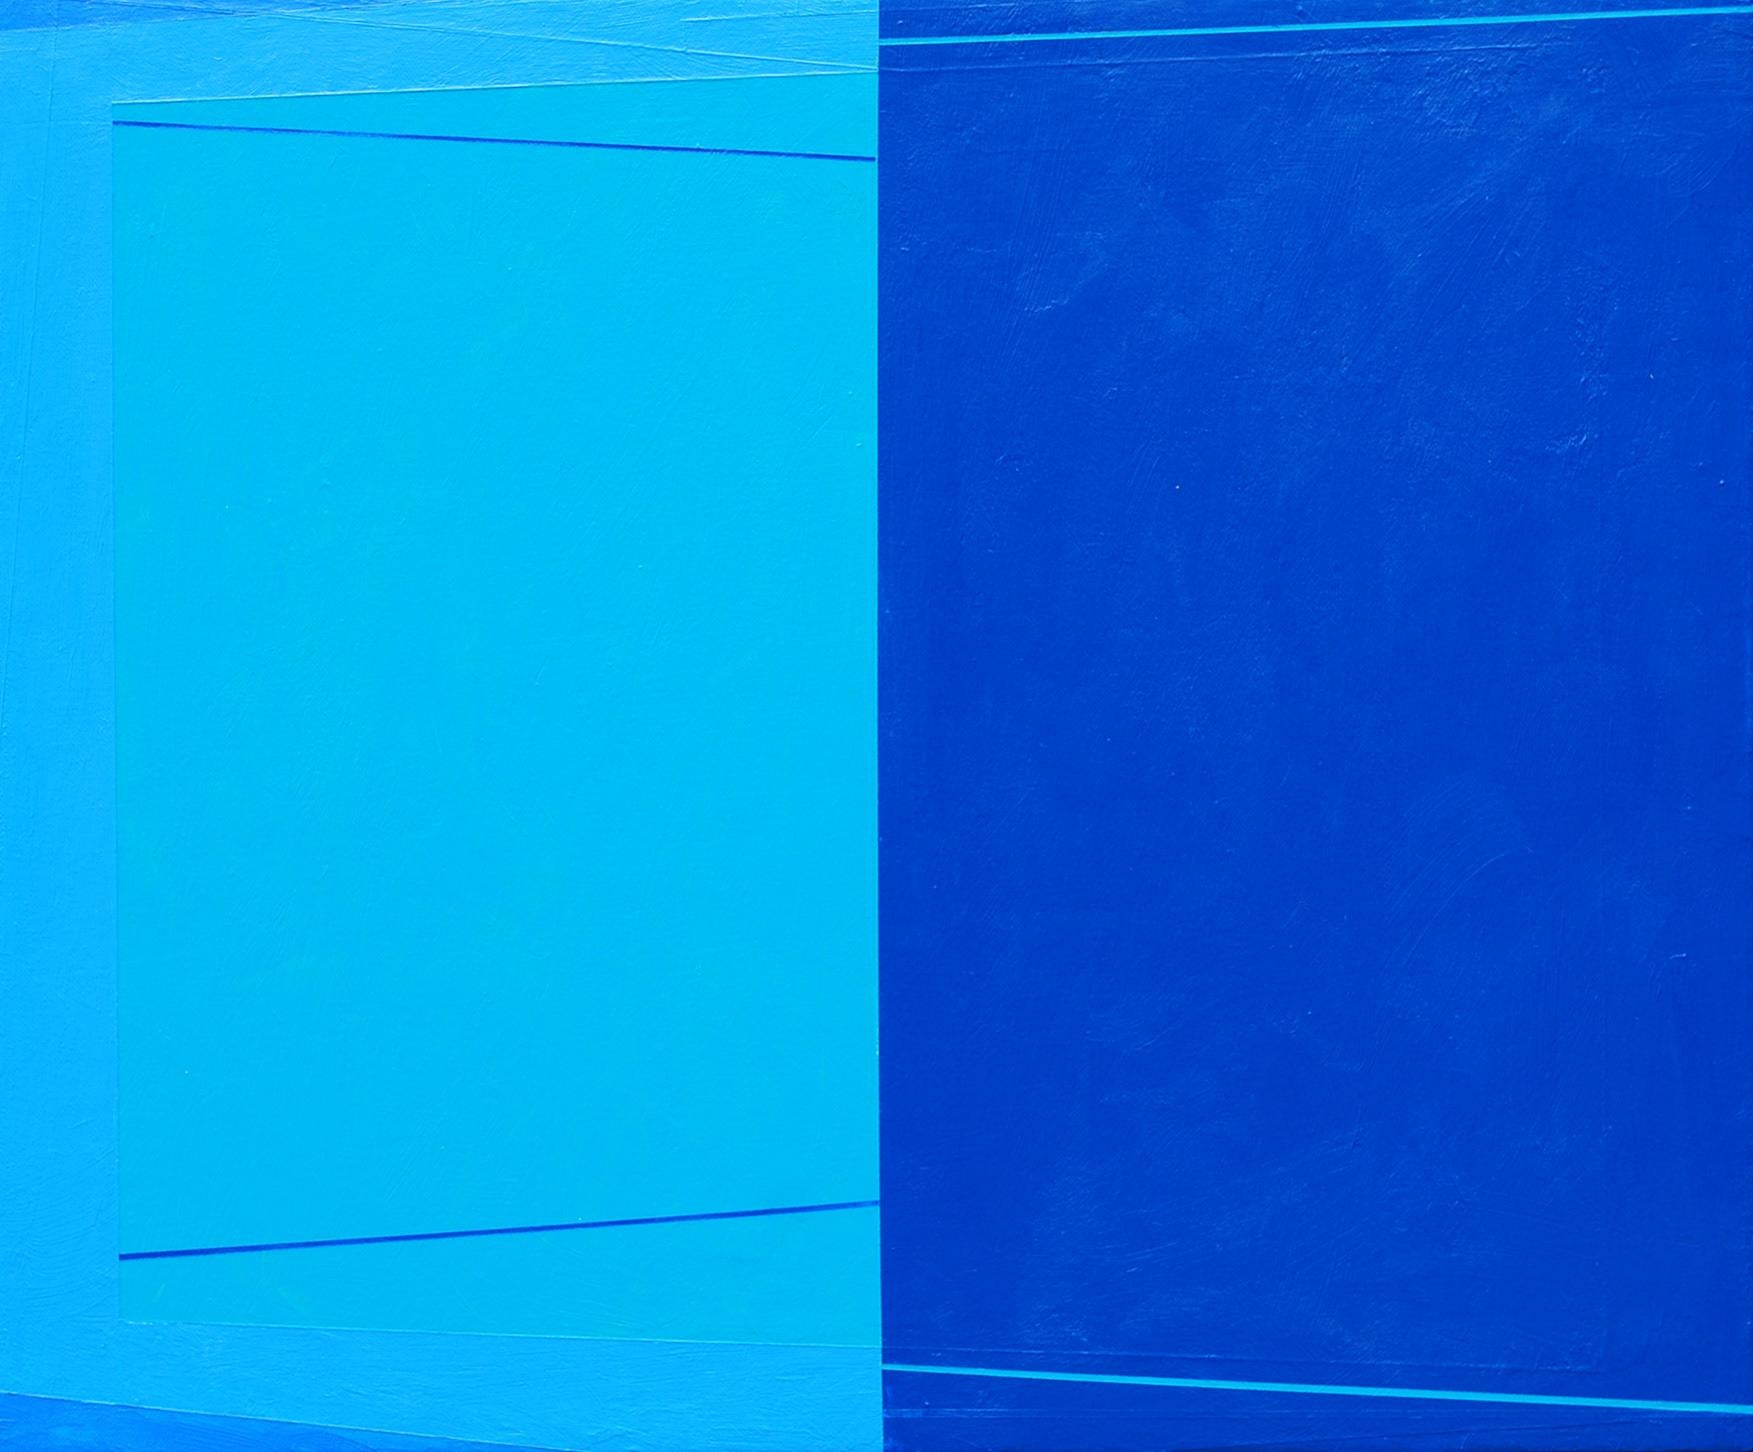 Im Mittelpunkt der künstlerischen Praxis von Macyn Bolt steht das Interesse an den Qualitäten von Reflexion, Spiegelung und kontrastierenden Perspektiven, die dem Raum der abstrakten Malerei eigen sind. Mit den dramatischen und subtilen